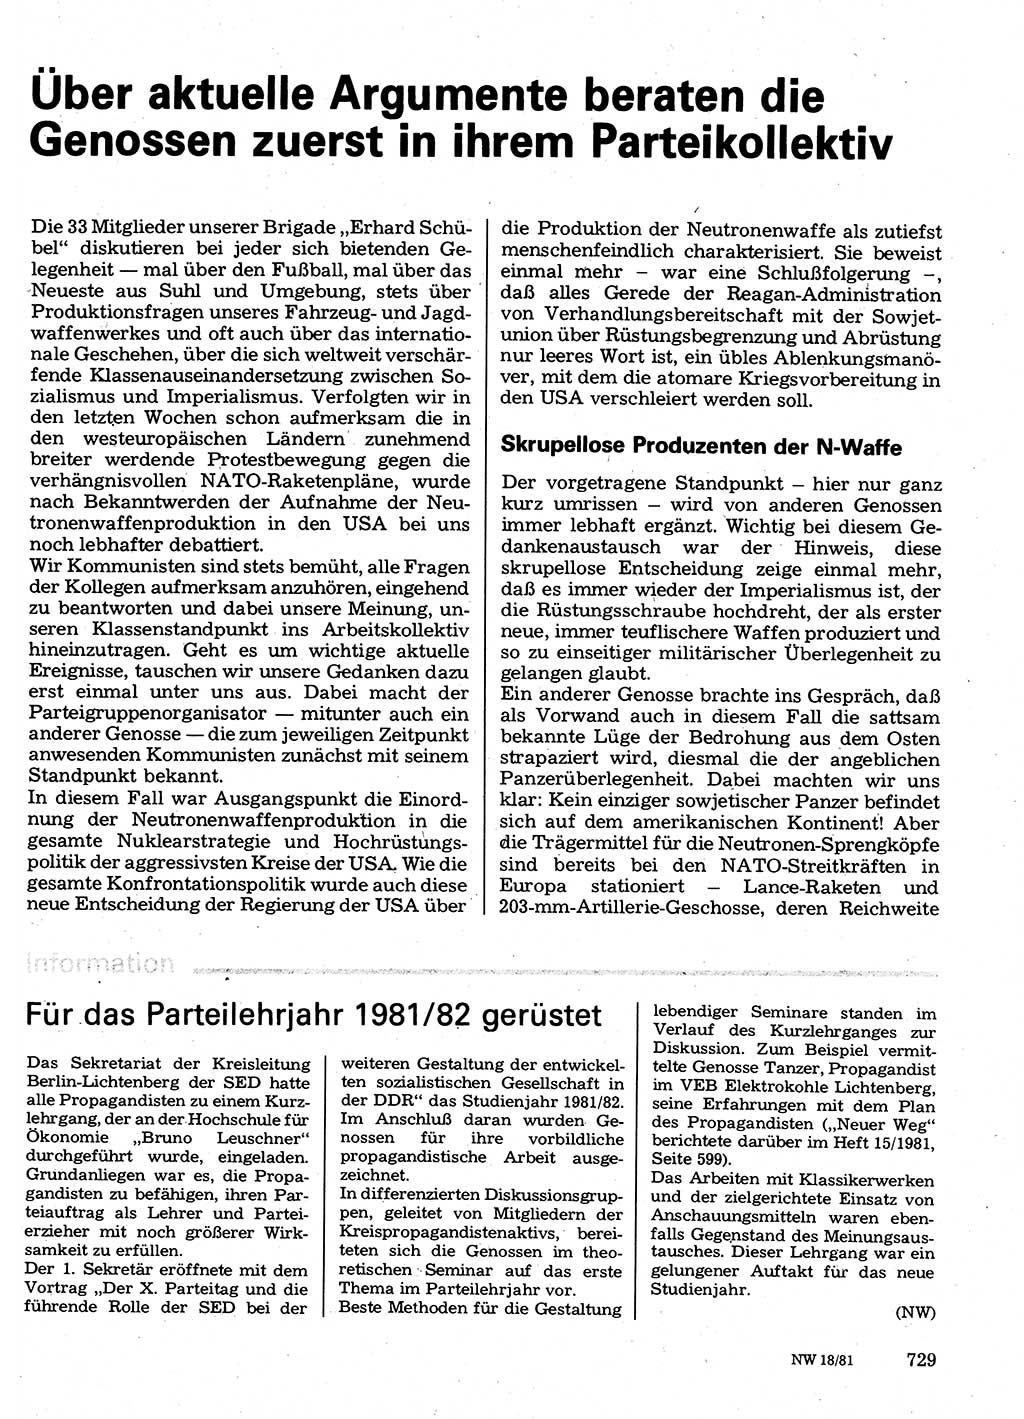 Neuer Weg (NW), Organ des Zentralkomitees (ZK) der SED (Sozialistische Einheitspartei Deutschlands) für Fragen des Parteilebens, 36. Jahrgang [Deutsche Demokratische Republik (DDR)] 1981, Seite 729 (NW ZK SED DDR 1981, S. 729)